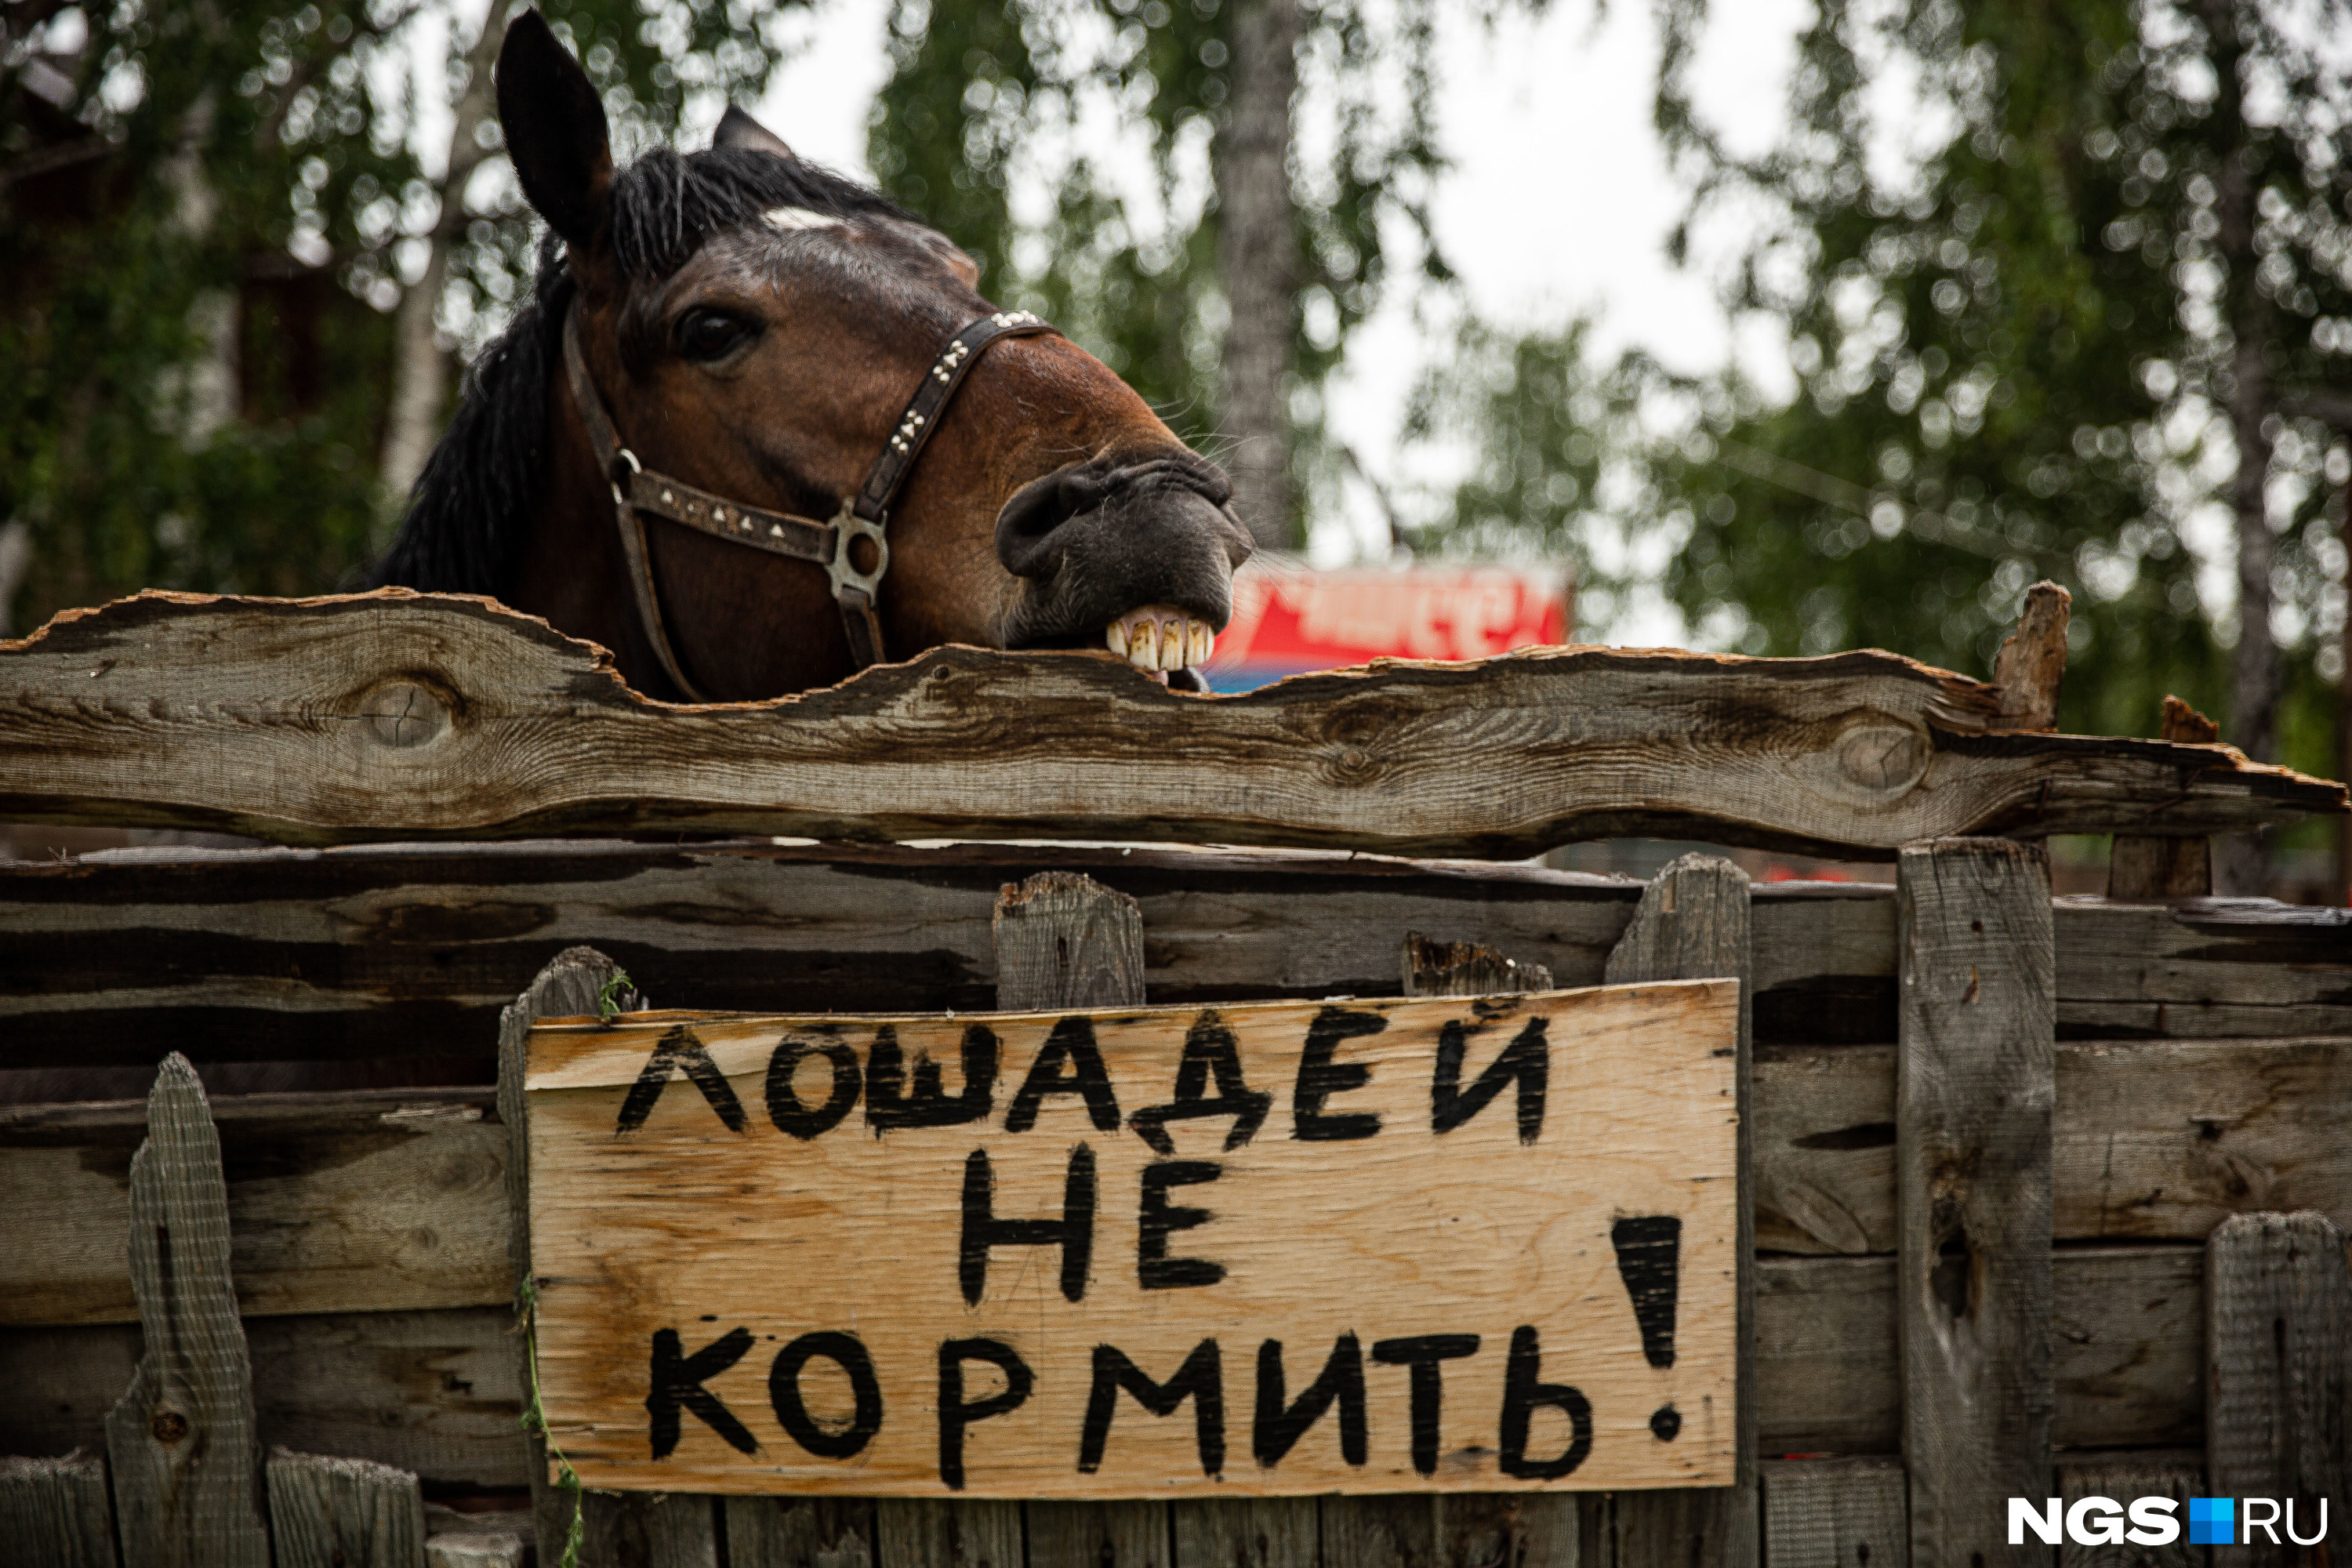 История зоотехника из Новосибирска, которая открыла конный клуб «Арион» и зарабатывает на лошадях - 10 июня 2020 - НГС